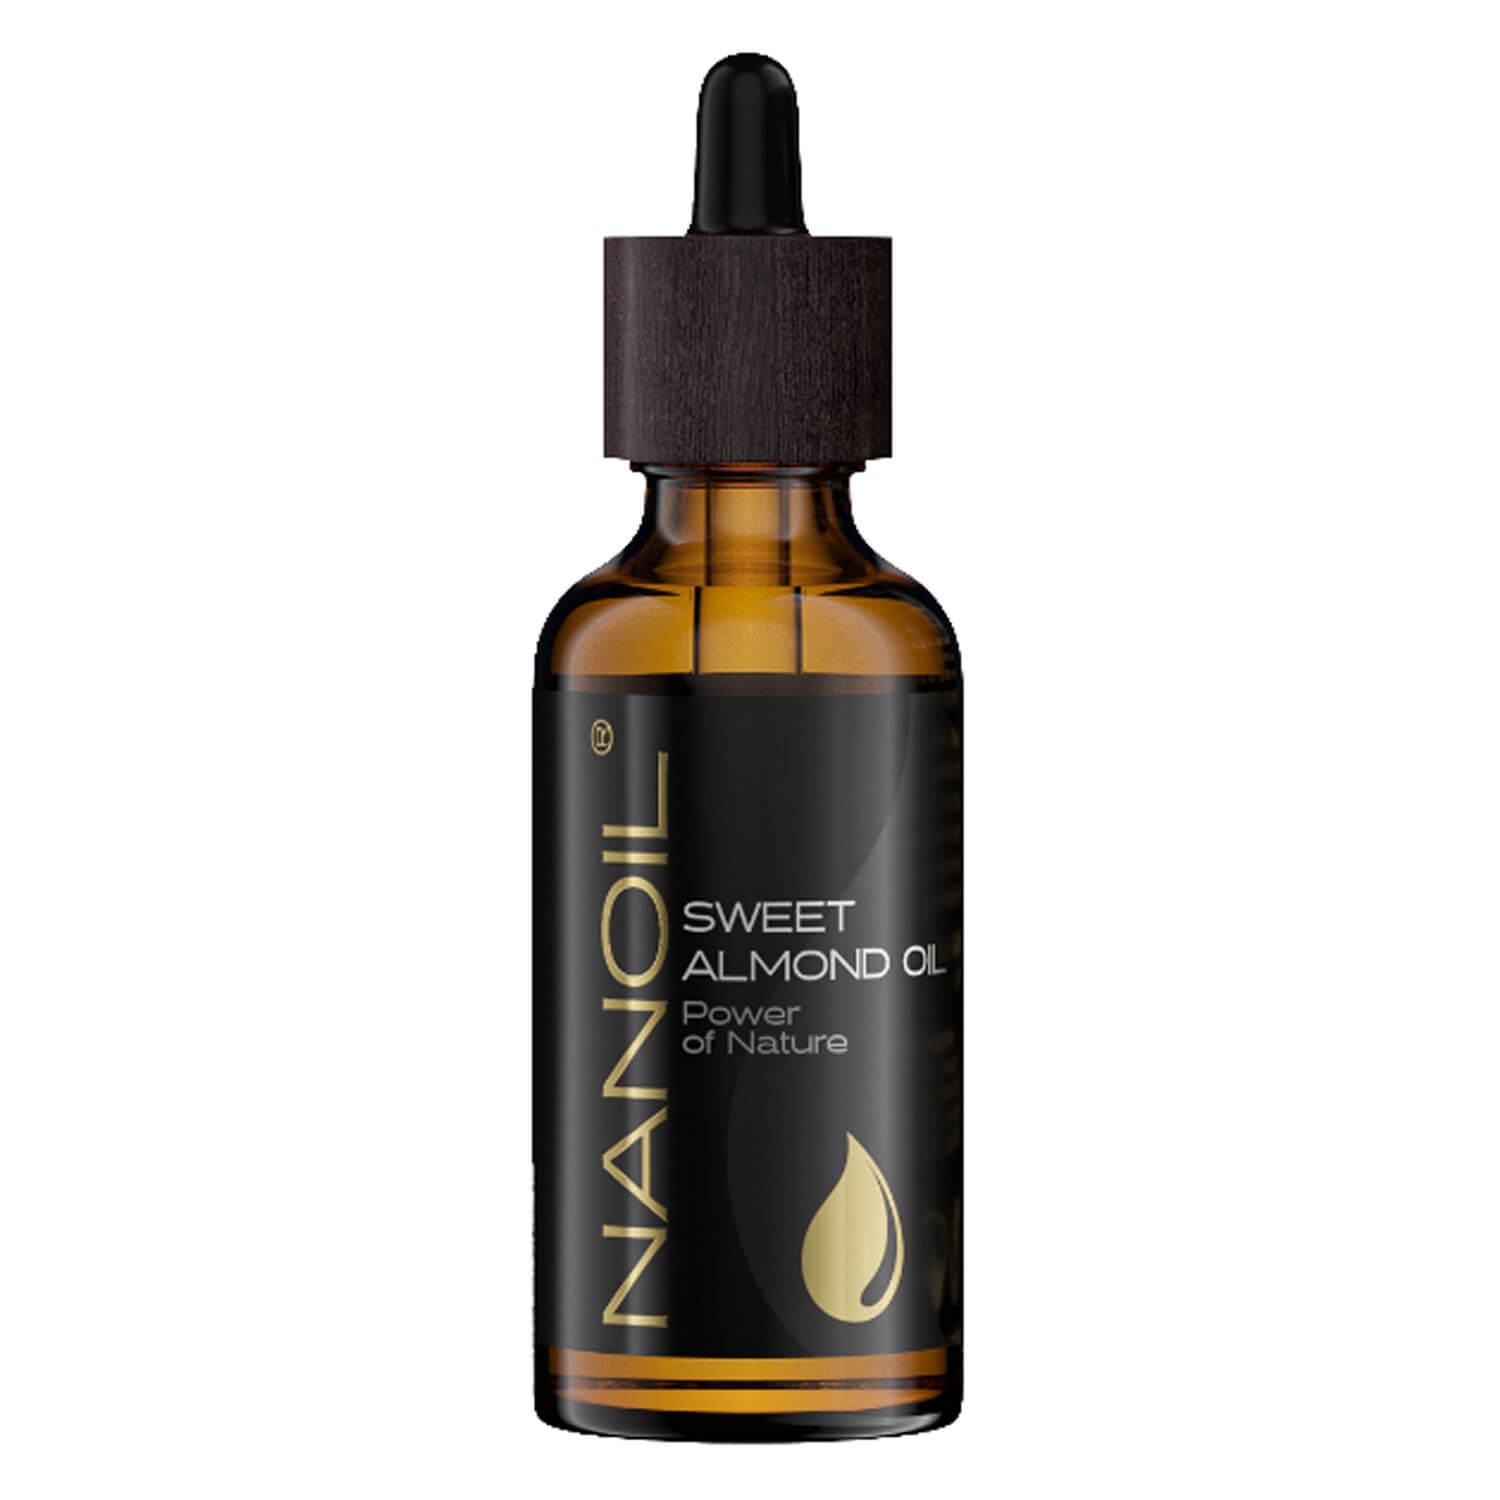 Produktbild von Nanoil - Sweet Almond Oil